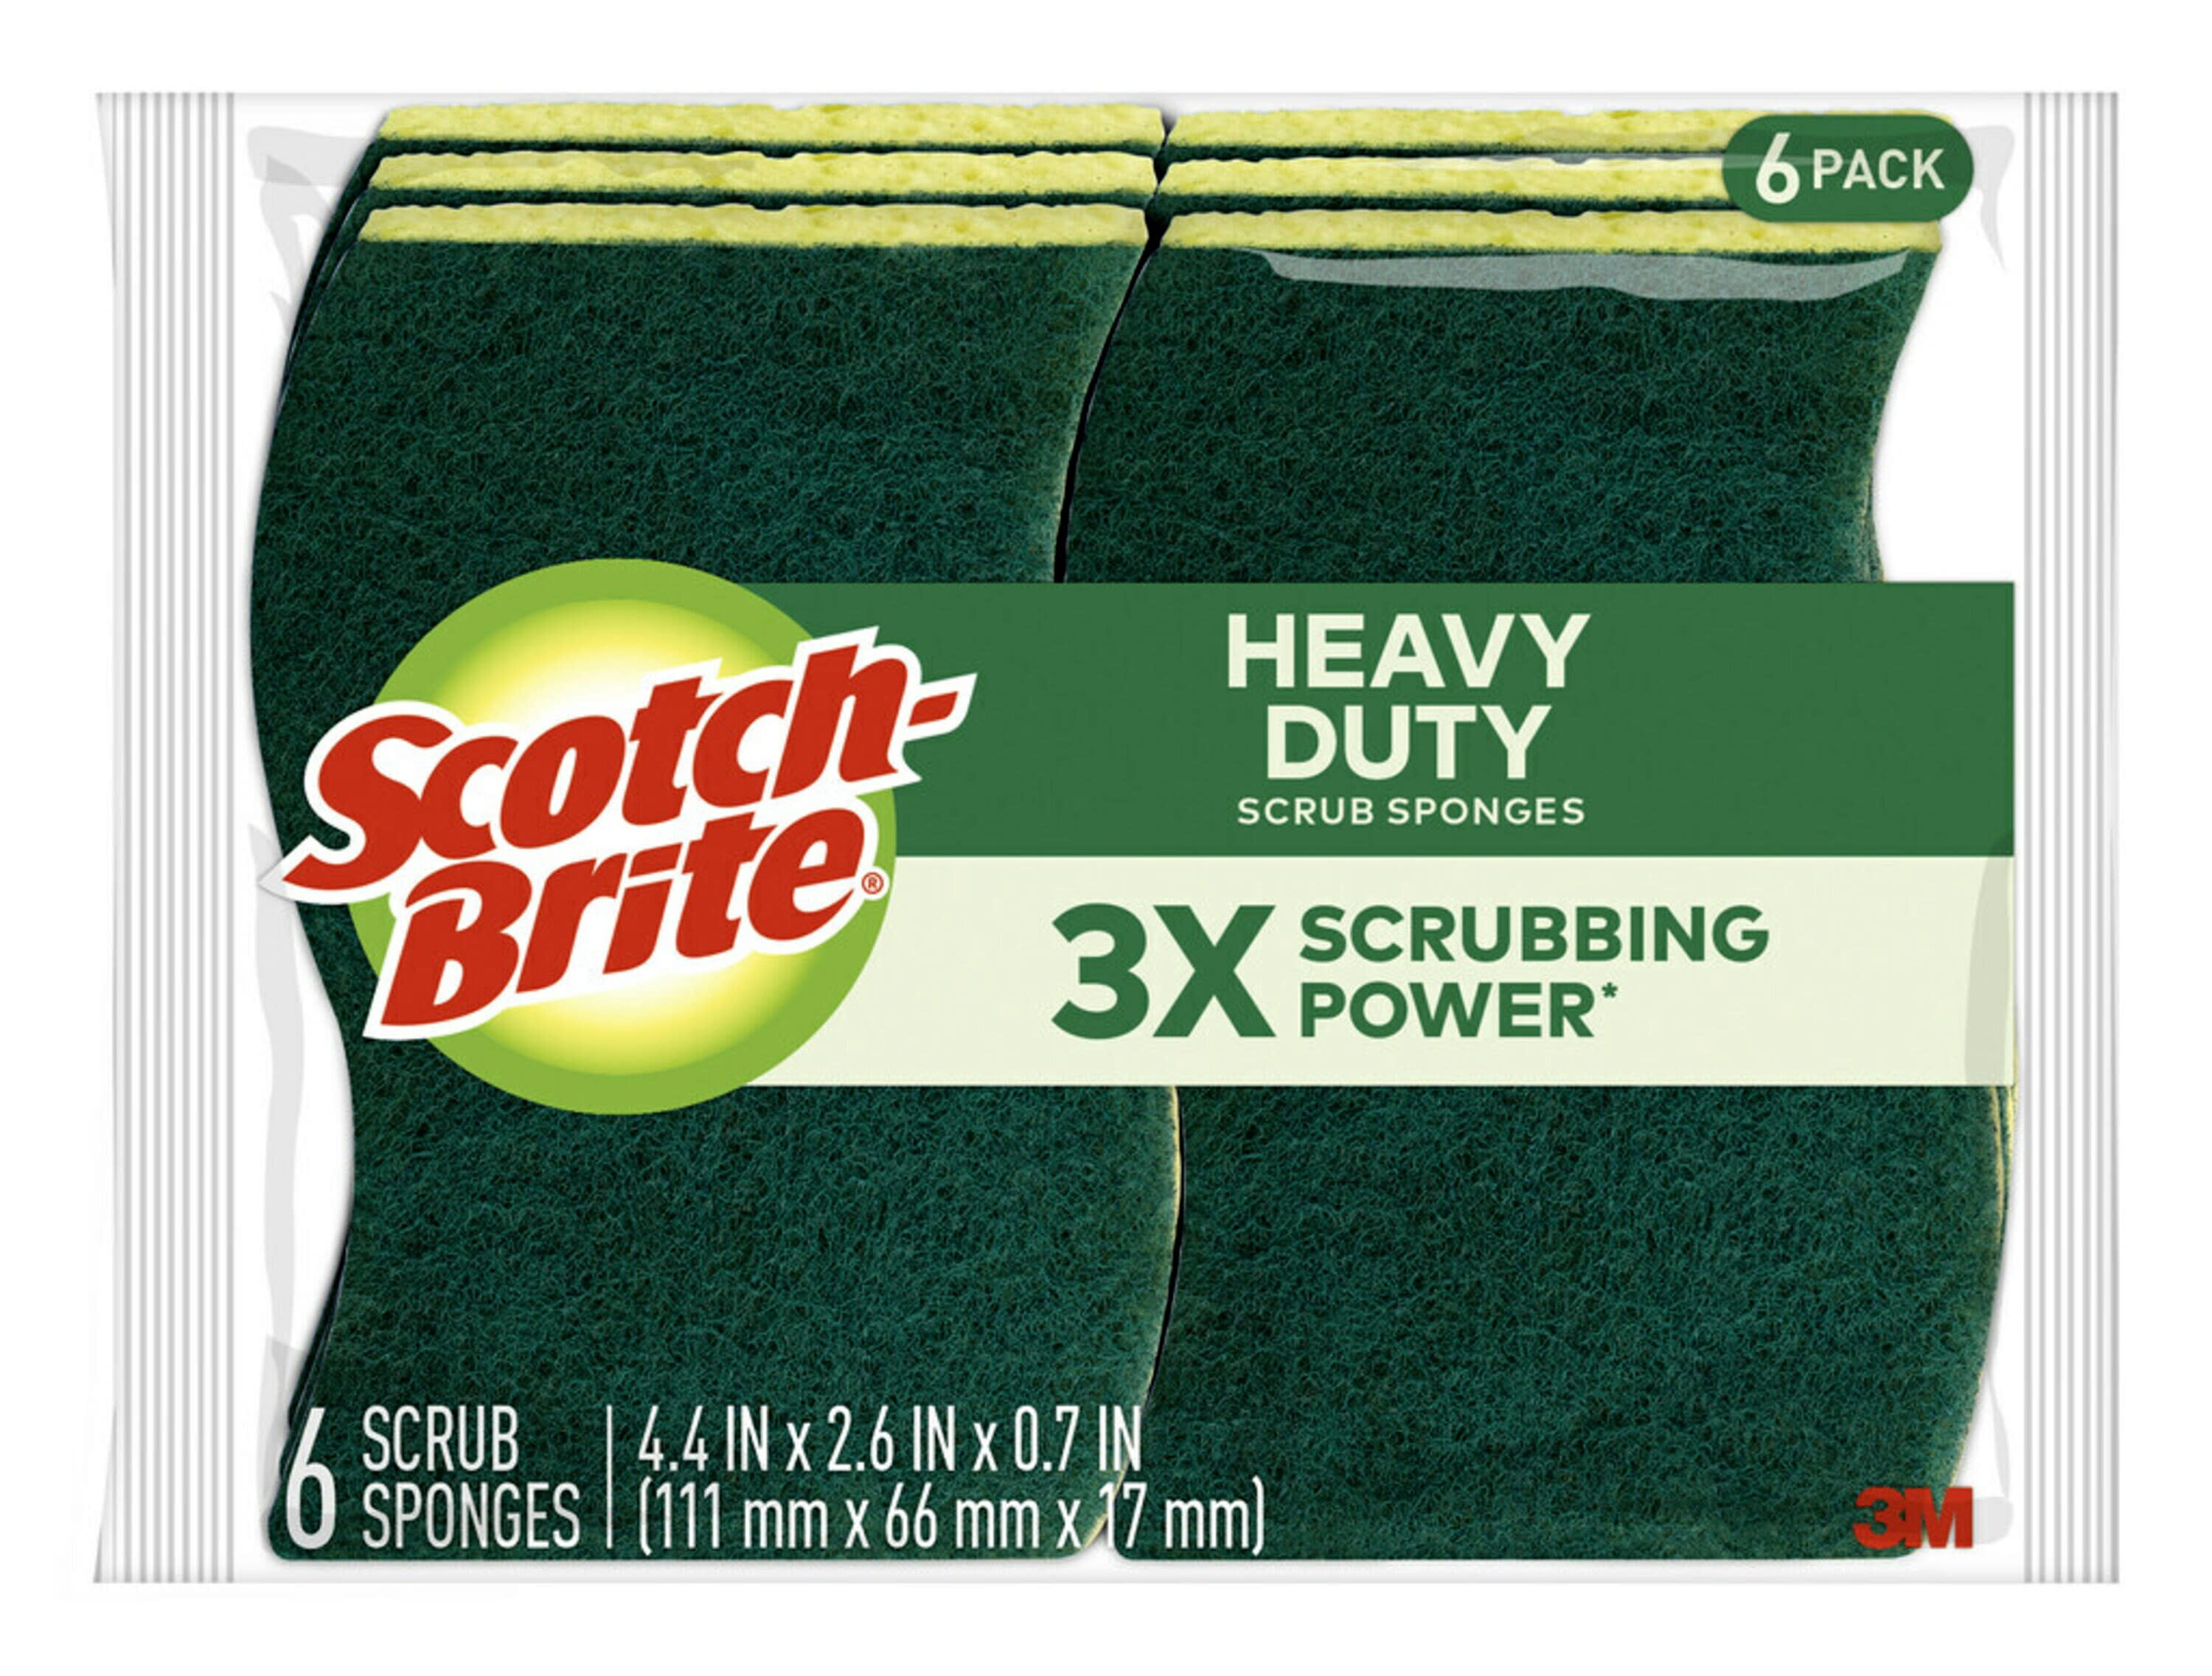 Scotch-Brite Heavy Duty Scrub Sponge Value Pack - 6 count